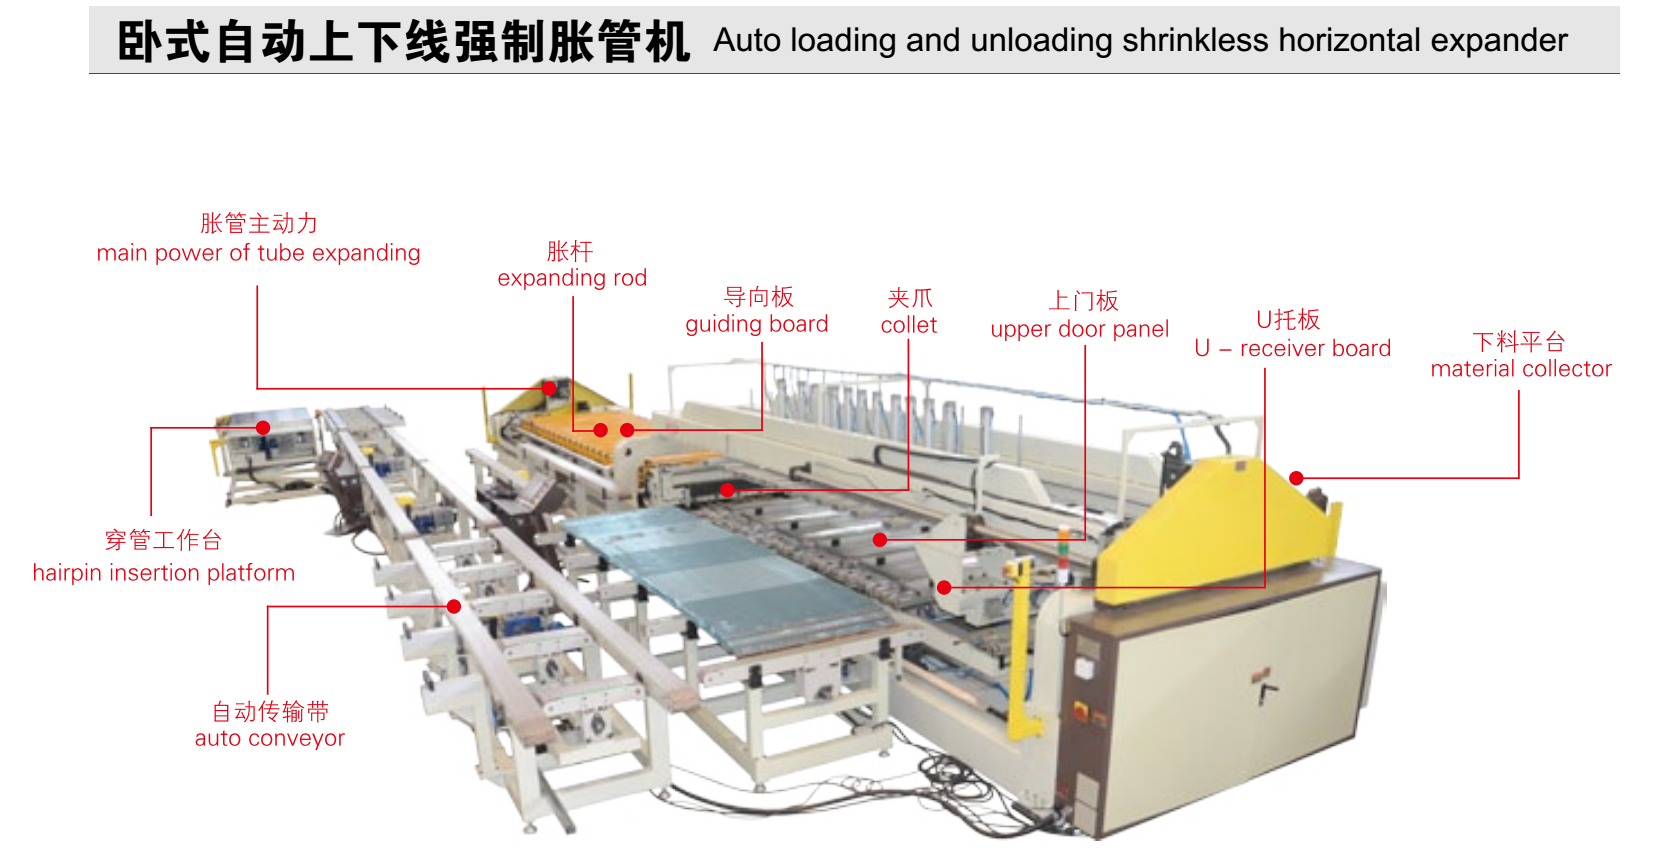 Heat-exchanger processing equipment